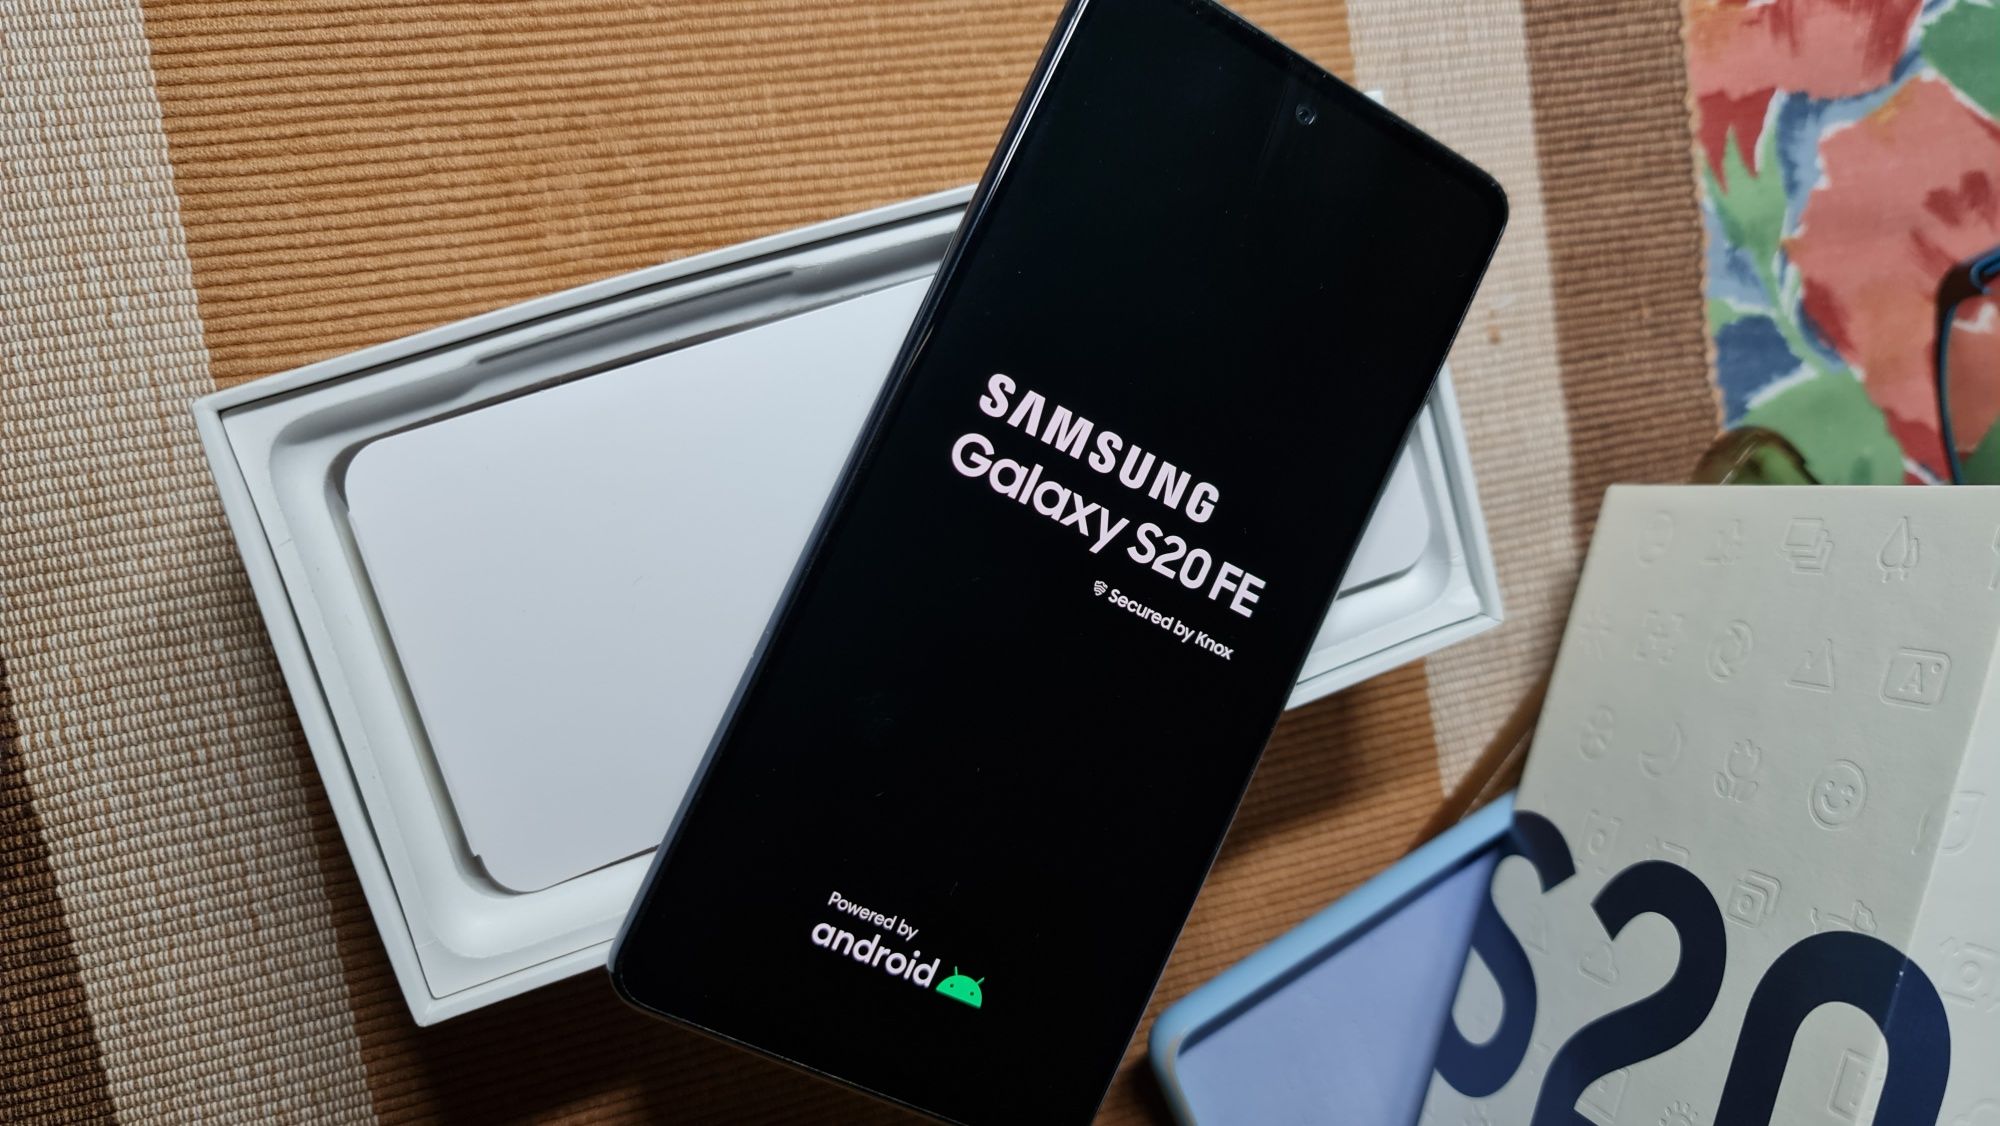 Samsung Galaxy S 20 fe